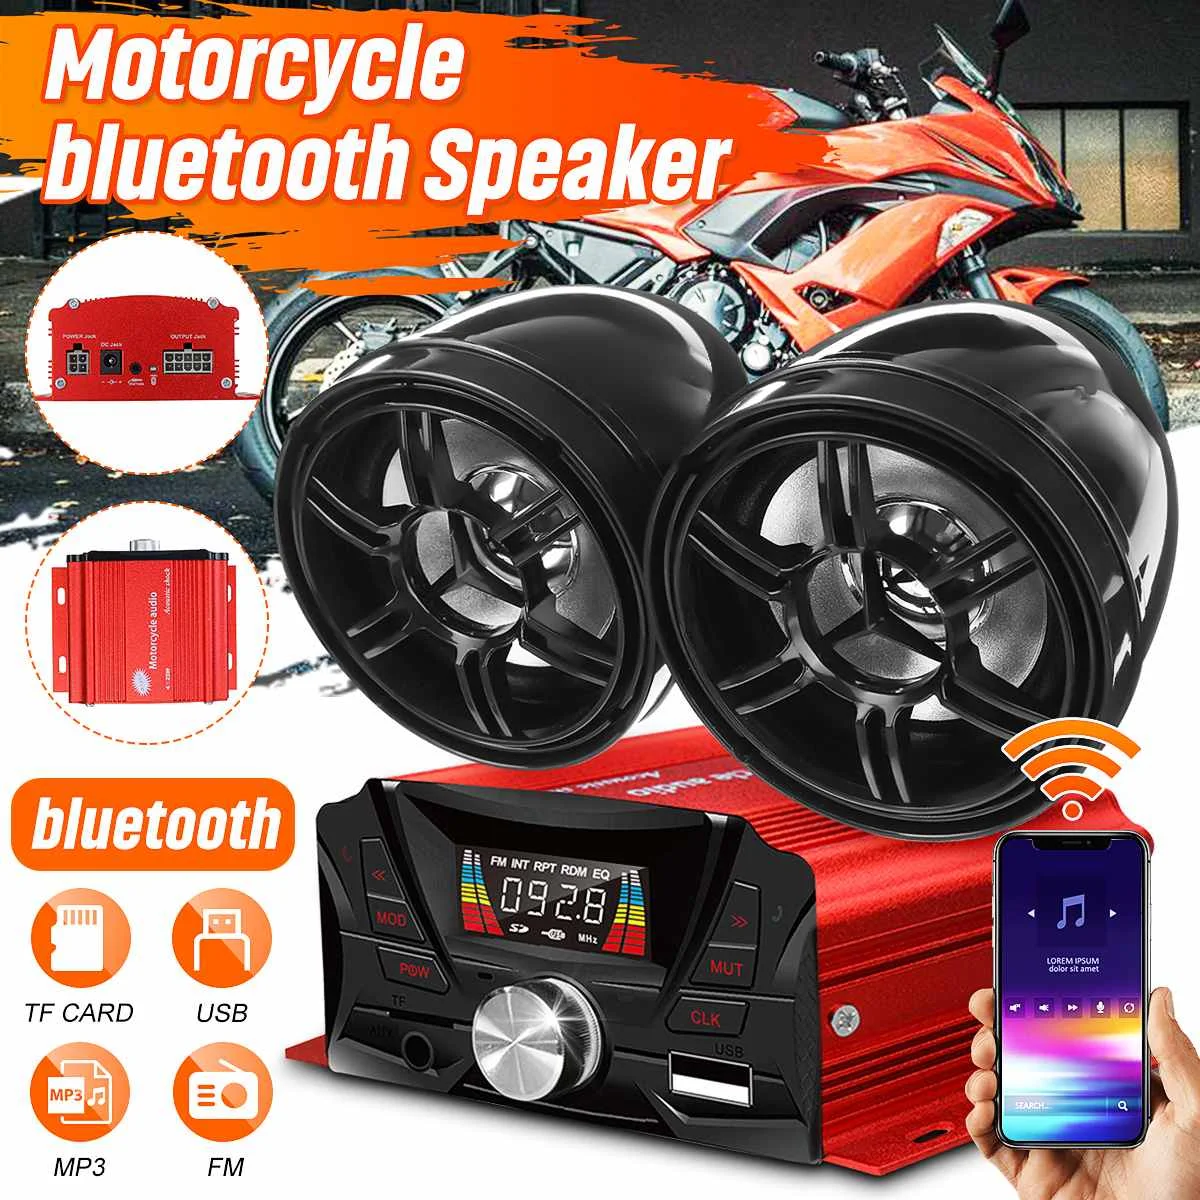 

Bluetooth-магнитола для мотоцикла, скутера, квадроцикла, с поддержкой SD-карт, USB, MP3, FM-радио, 2 усилителя, водонепроницаемые динамики